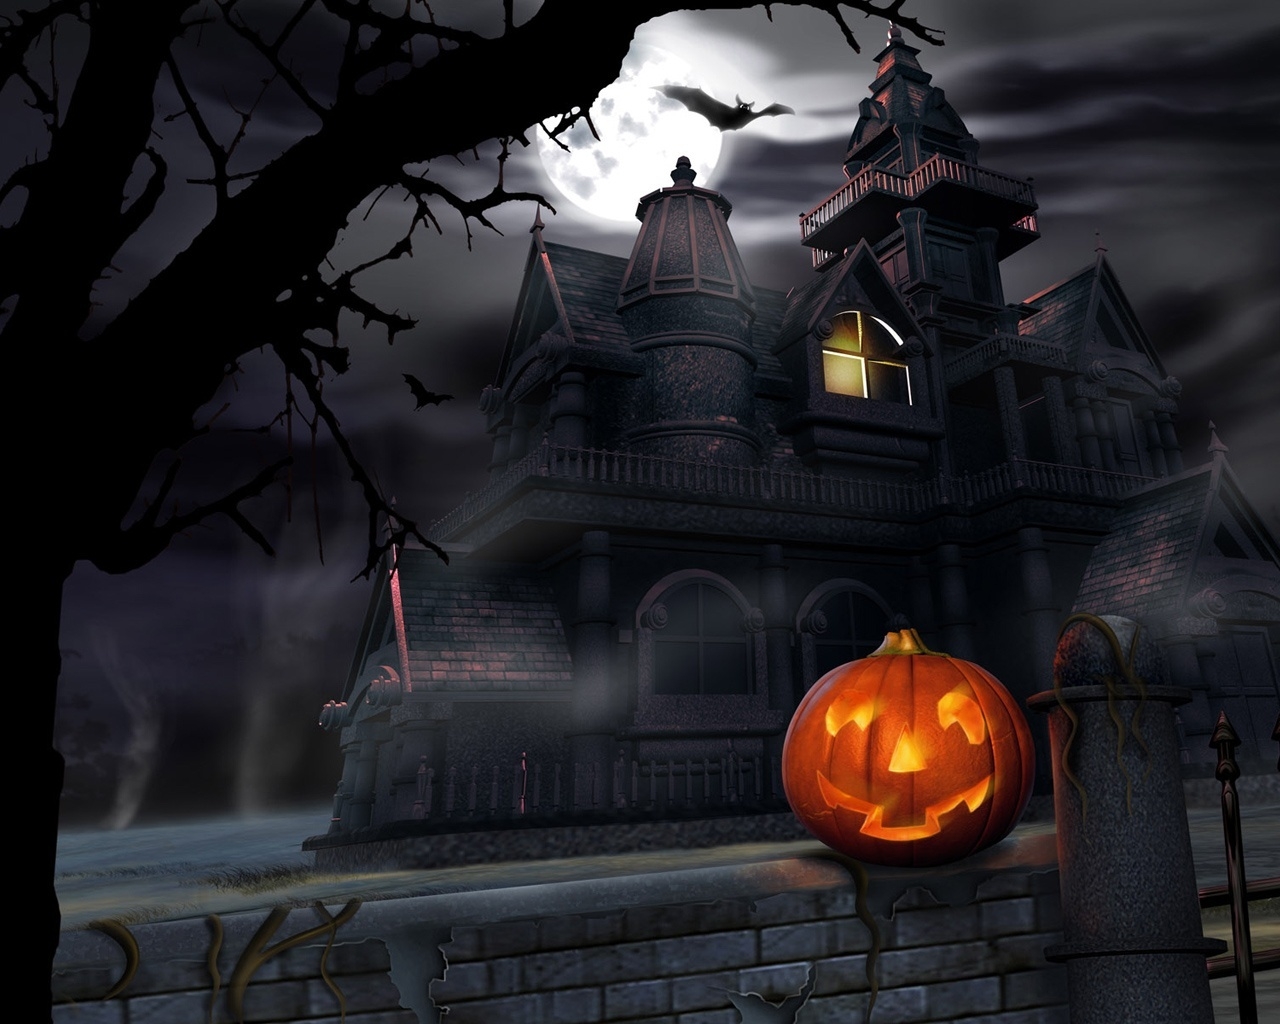 Pumpkin in Haloween dark night for 1280 x 1024 resolution